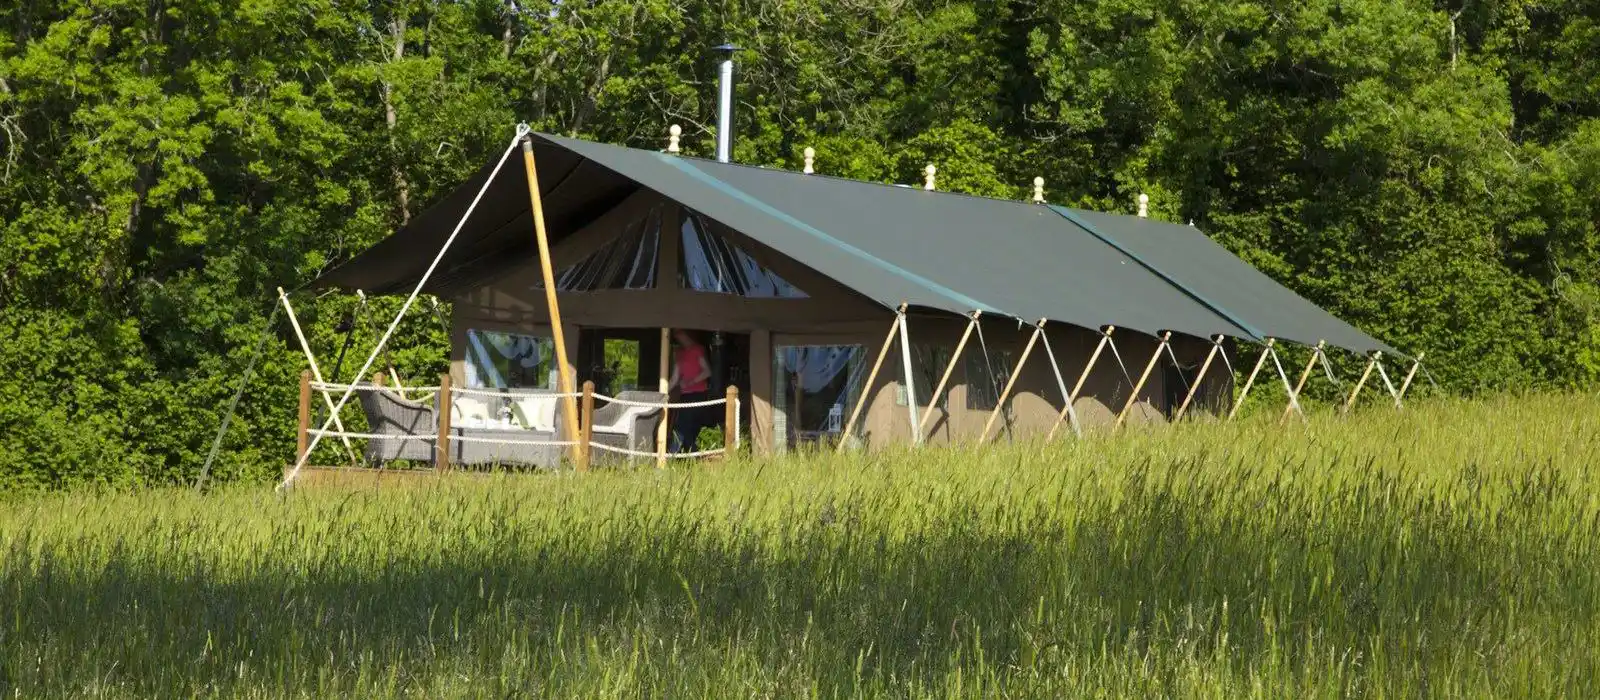 Safari tents